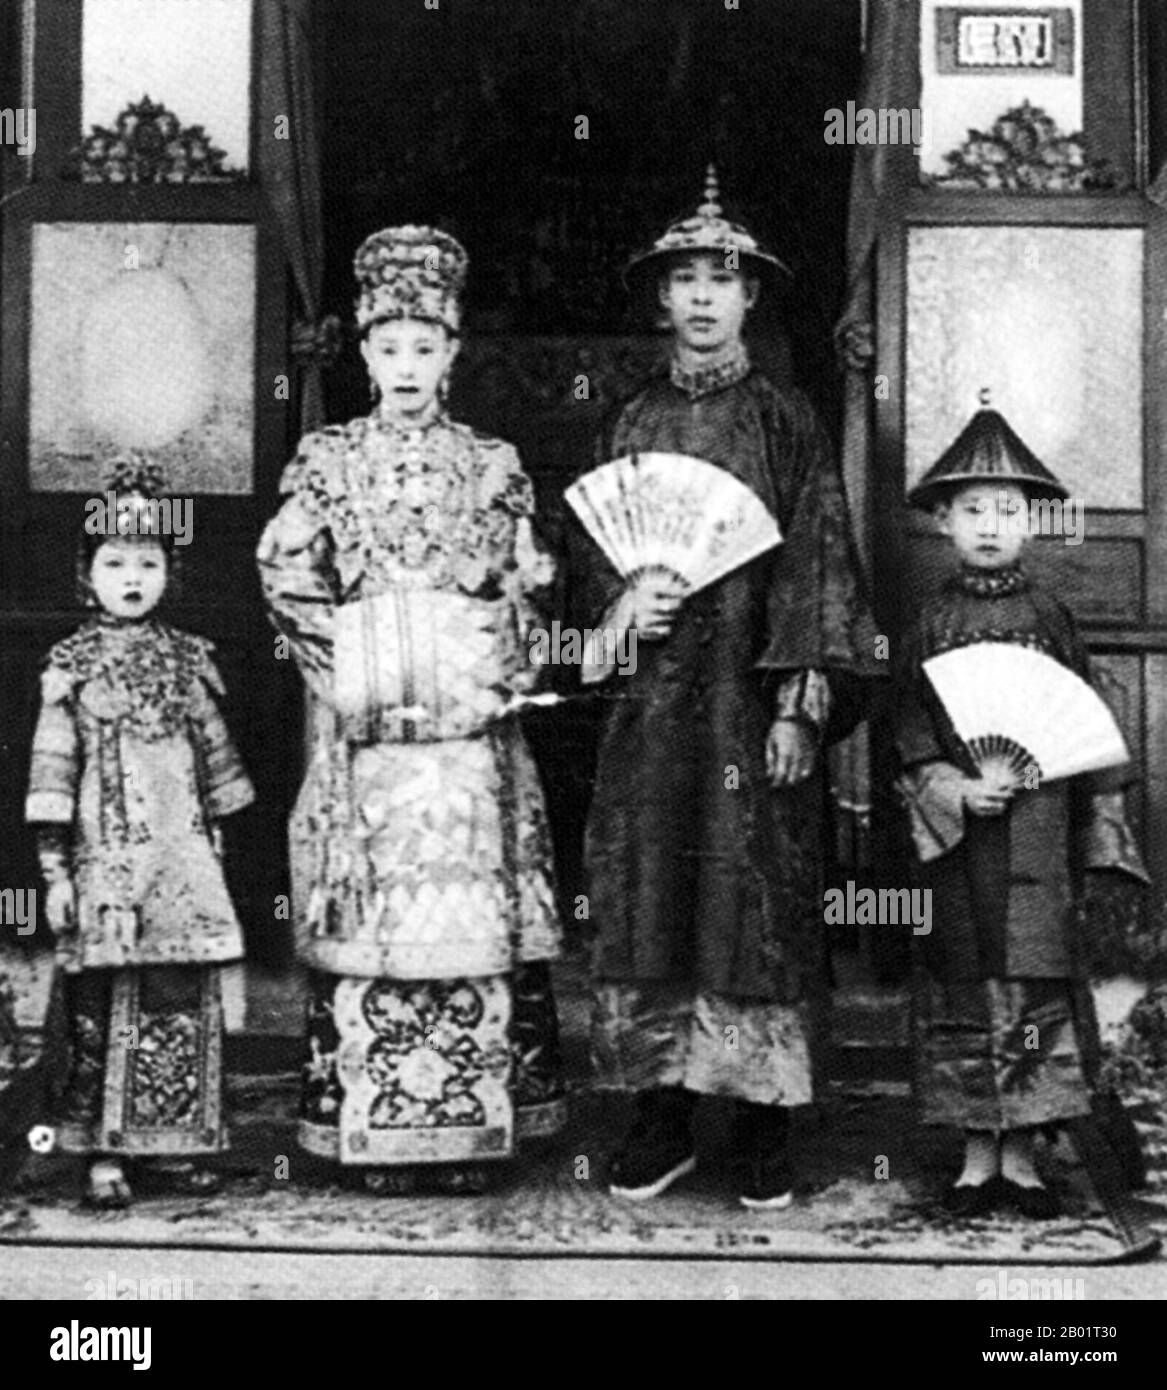 Malaysia/Singapur: Eine Peranakan Braut und Bräutigam posieren für ihr Hochzeitsfoto, Singapur, ca. 1930. Peranakan Chinese und Baba-Nyonya sind die Bezeichnungen für die Nachkommen chinesischer Einwanderer aus dem späten 15. Und 16. Jahrhundert, die während der Kolonialzeit in den malaiisch-indonesischen Archipel von Nusantara kamen. Mitglieder dieser Gemeinde in Malaysia bezeichnen sich als „Nyonya-Baba“ oder „Baba-Nyonya“. Nyonya ist der Begriff für die Weibchen und Baba für die Männchen. Sie gilt insbesondere für die ethnischen chinesischen Bevölkerungsgruppen der British Straits Settlements in Malaya und der von den Niederlanden kontrollierten Insel Java. Stockfoto